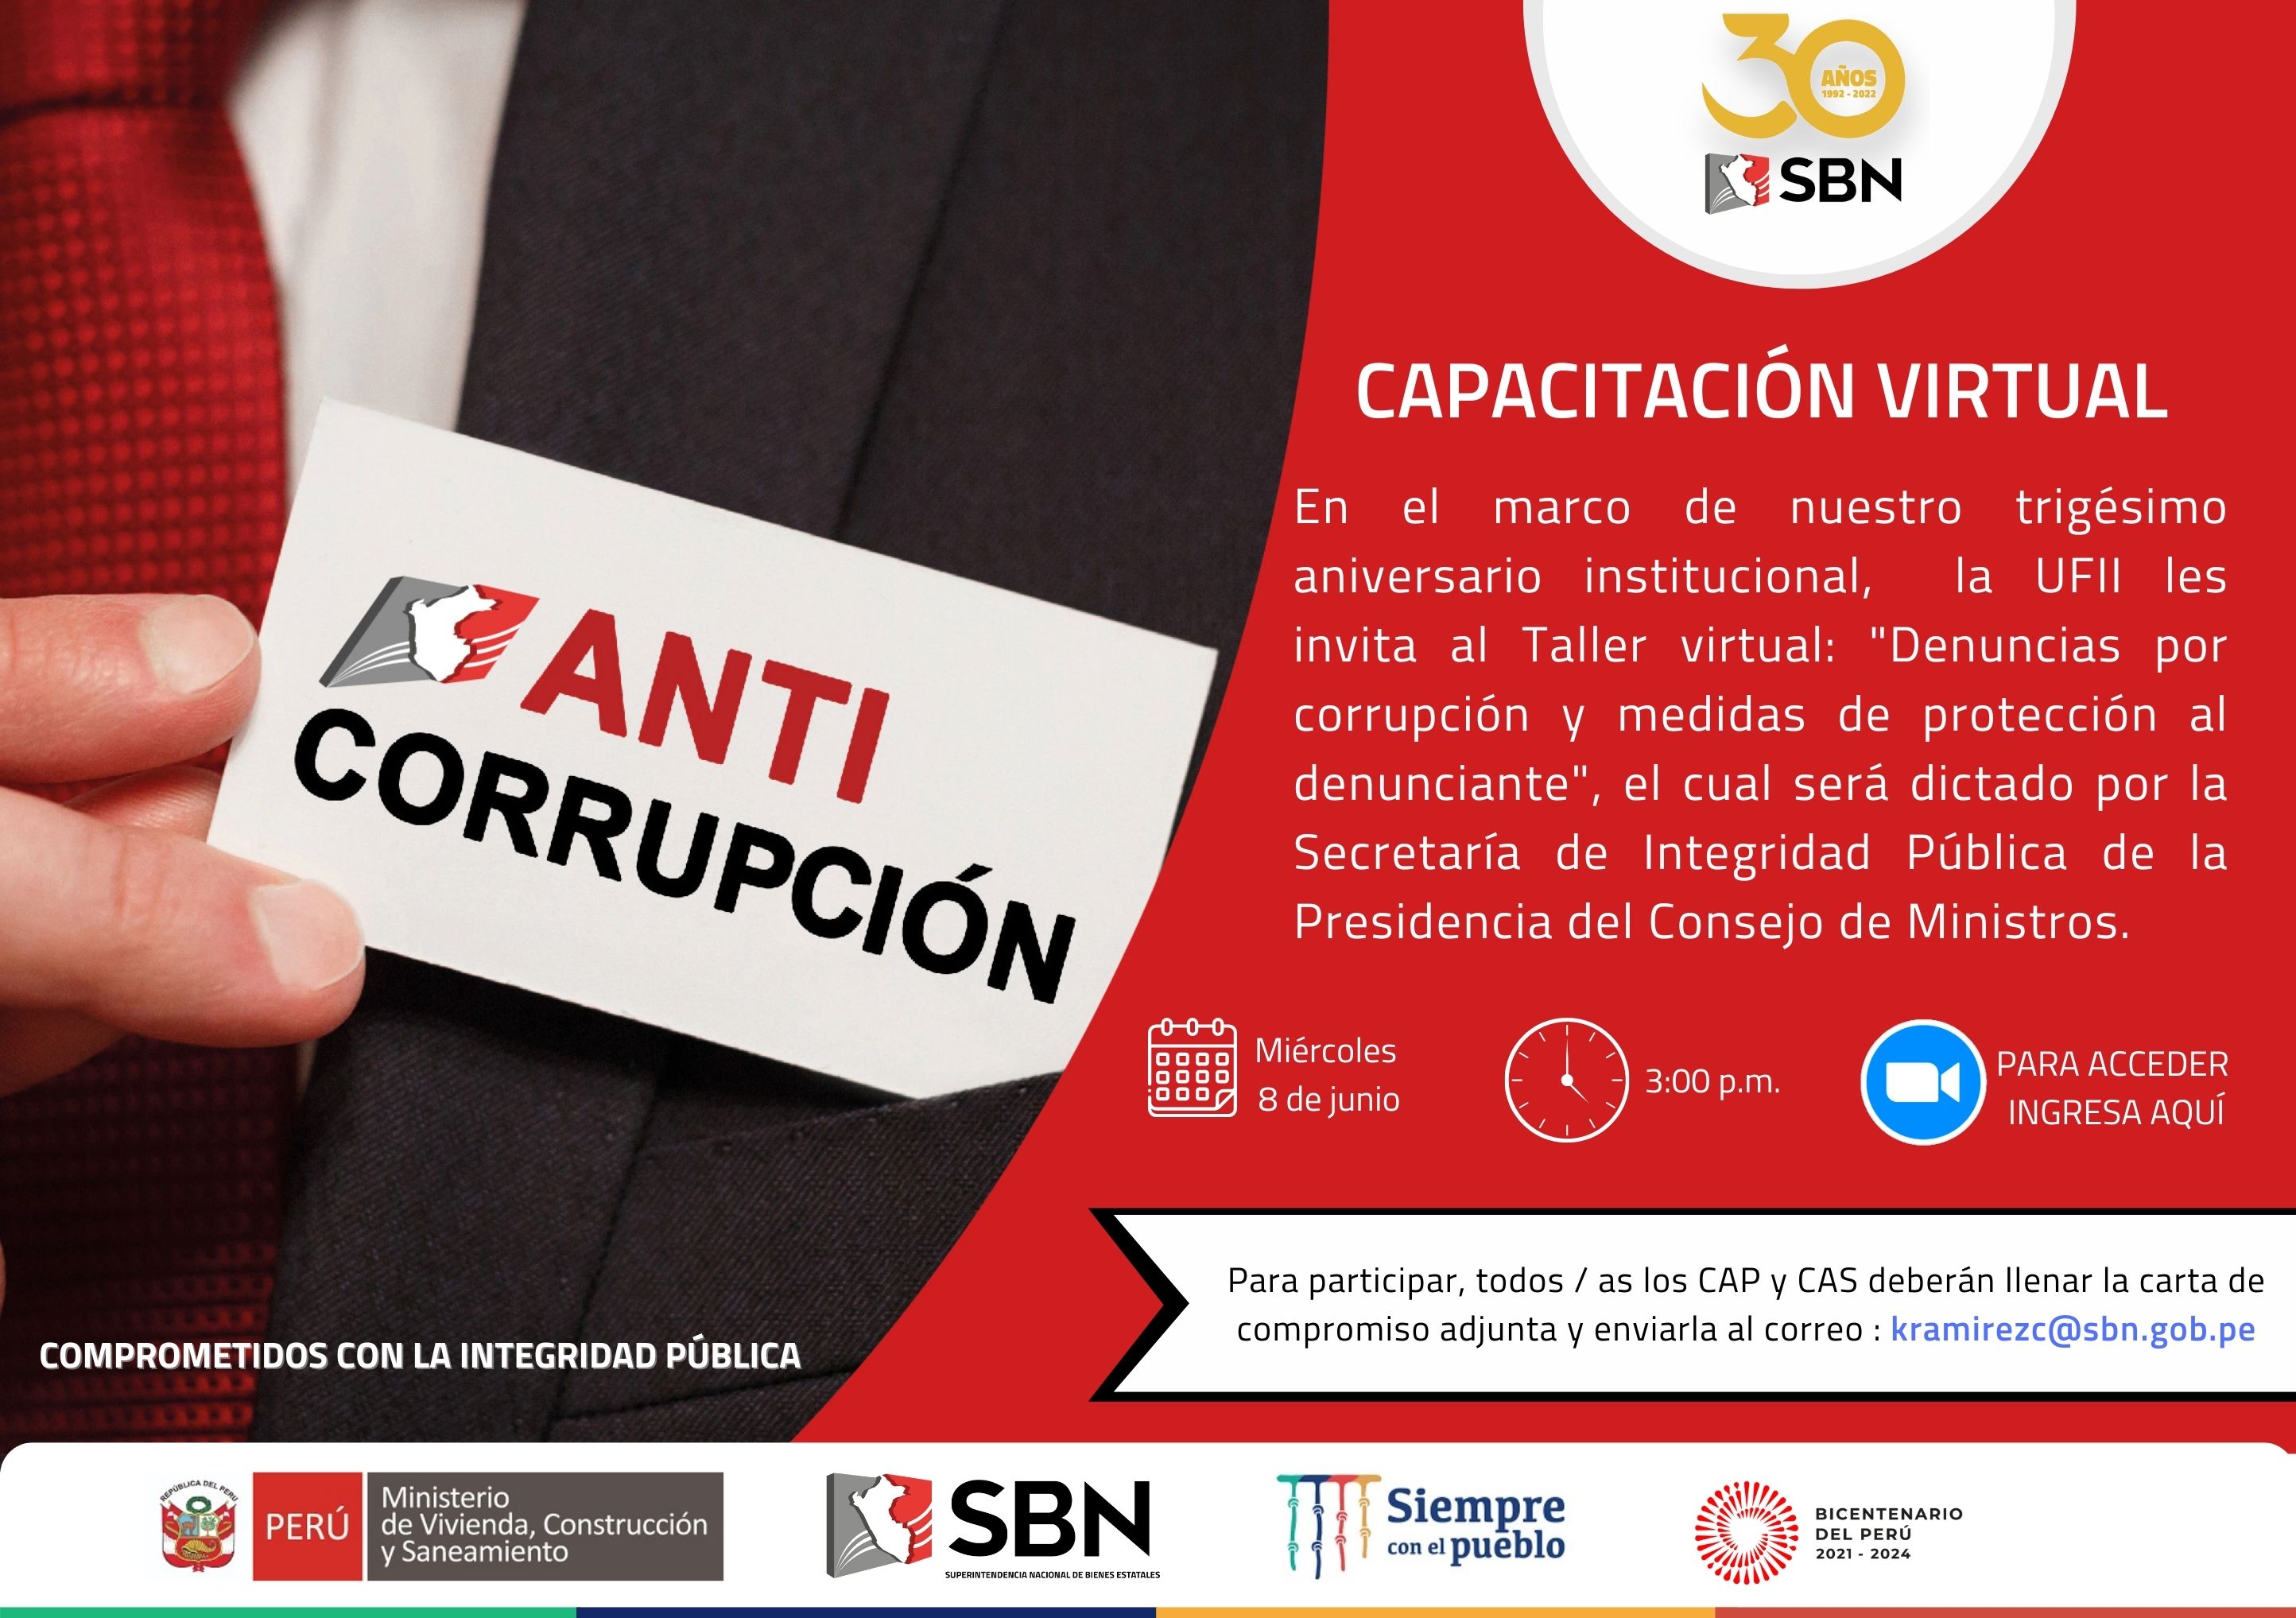  Capacitación a nuestros colaboradores sobre Denuncias por corrupción y medidas de protección al denunciante